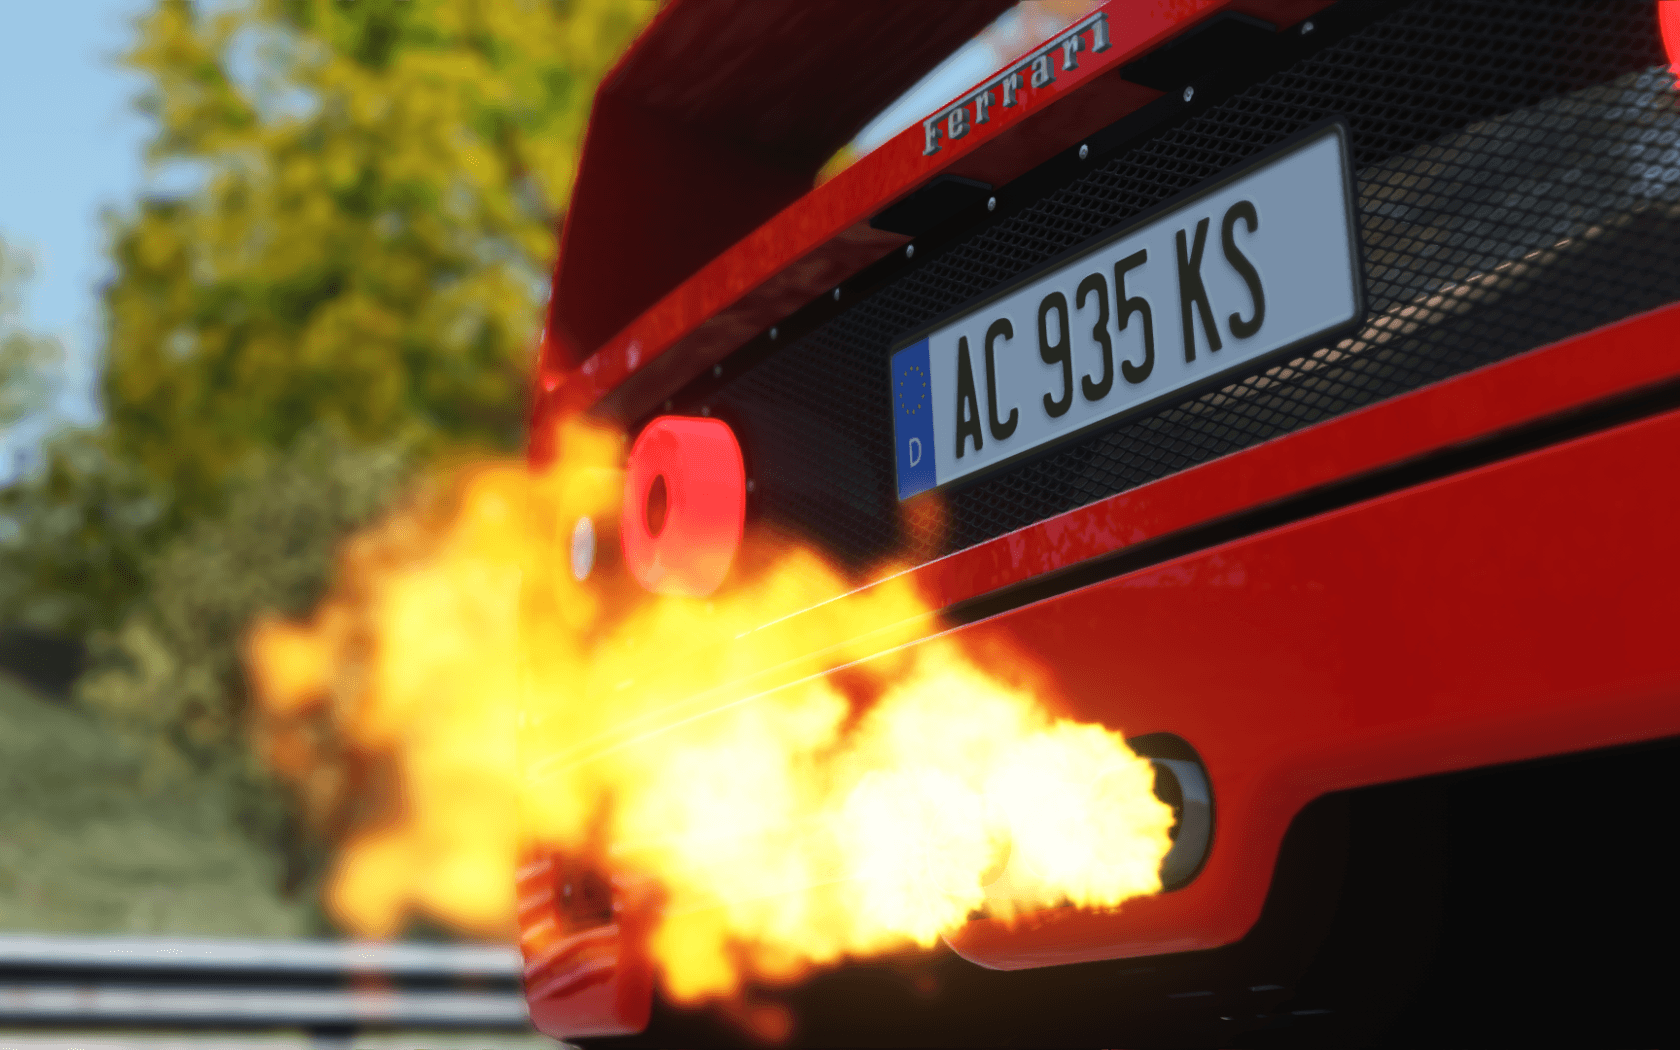 Download 1680x1050 Ferrari F Fire, Assetto Corsa, Back View, Cars